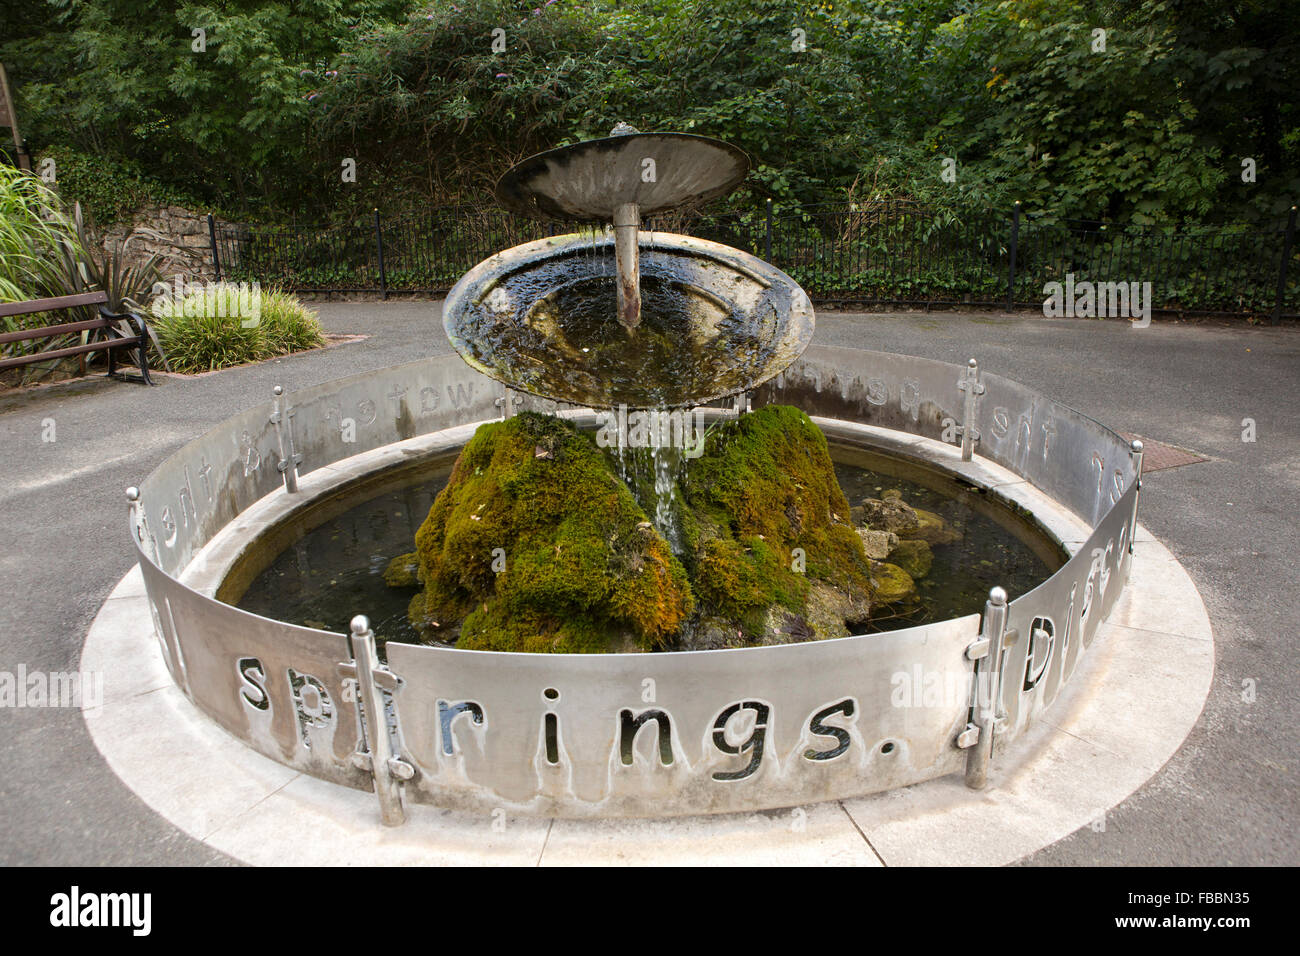 Royaume-uni, Angleterre, Derbyshire, Matlock Bath, South Parade, écoulement de l'eau sculpture moussu Banque D'Images